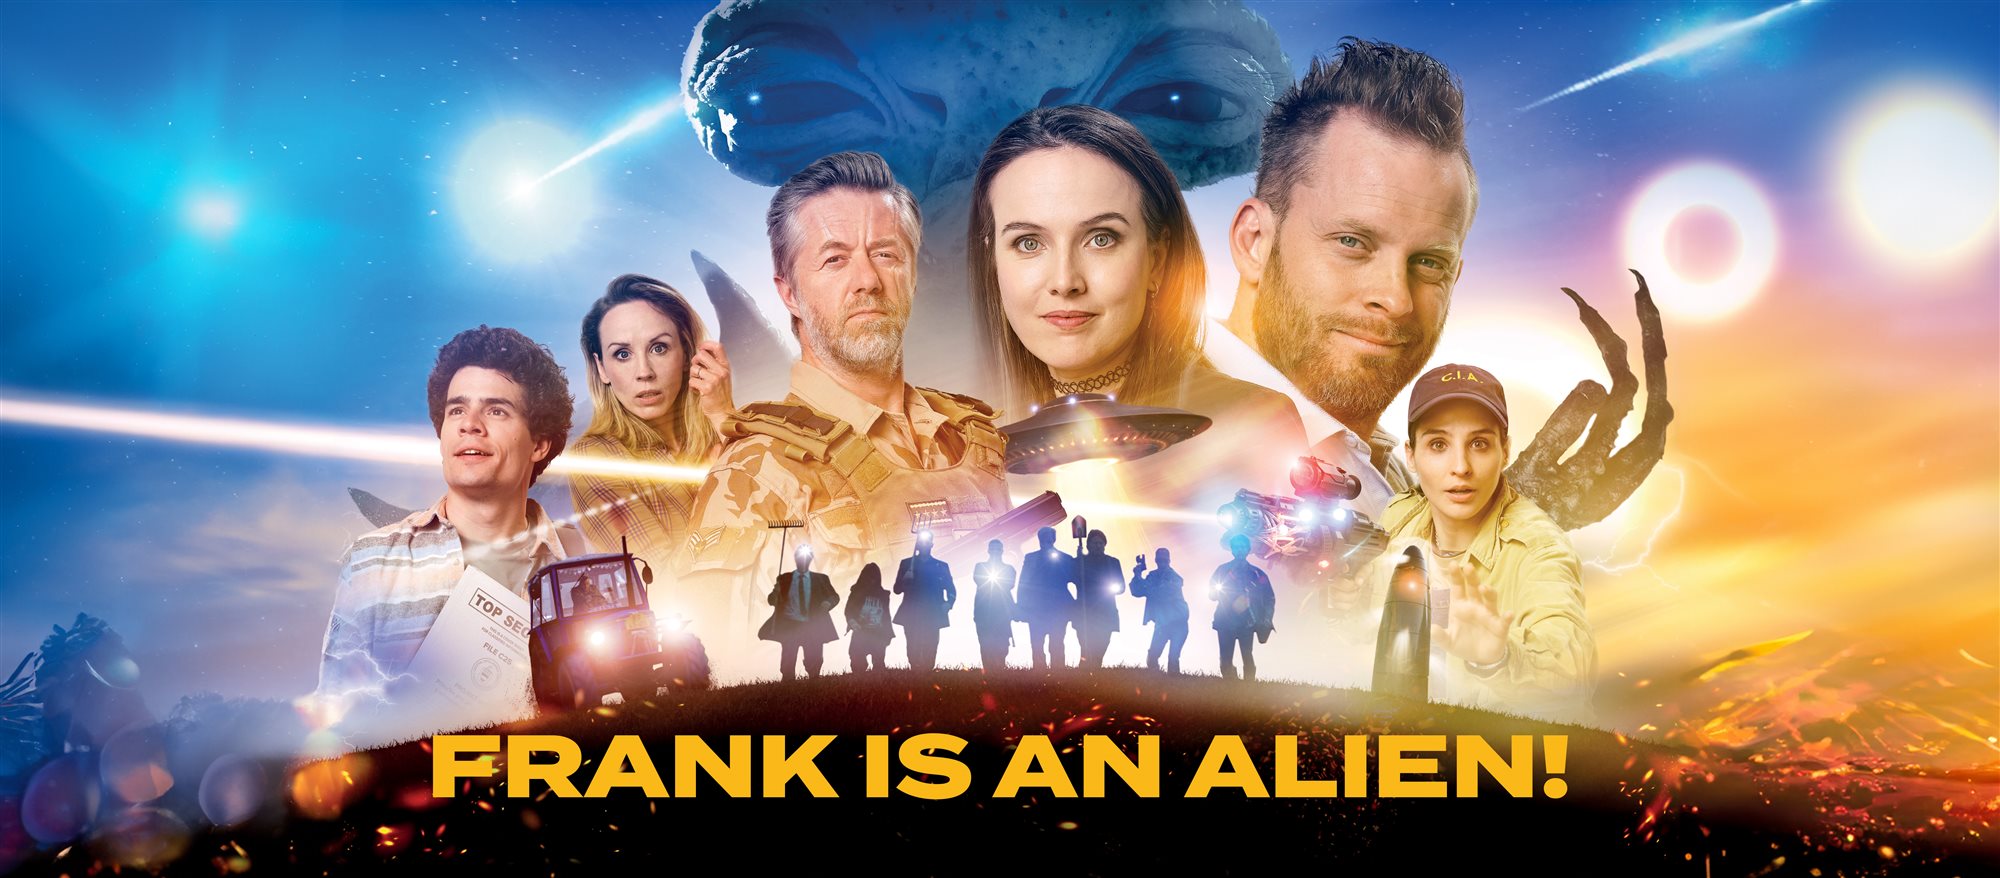 frank is an alien!